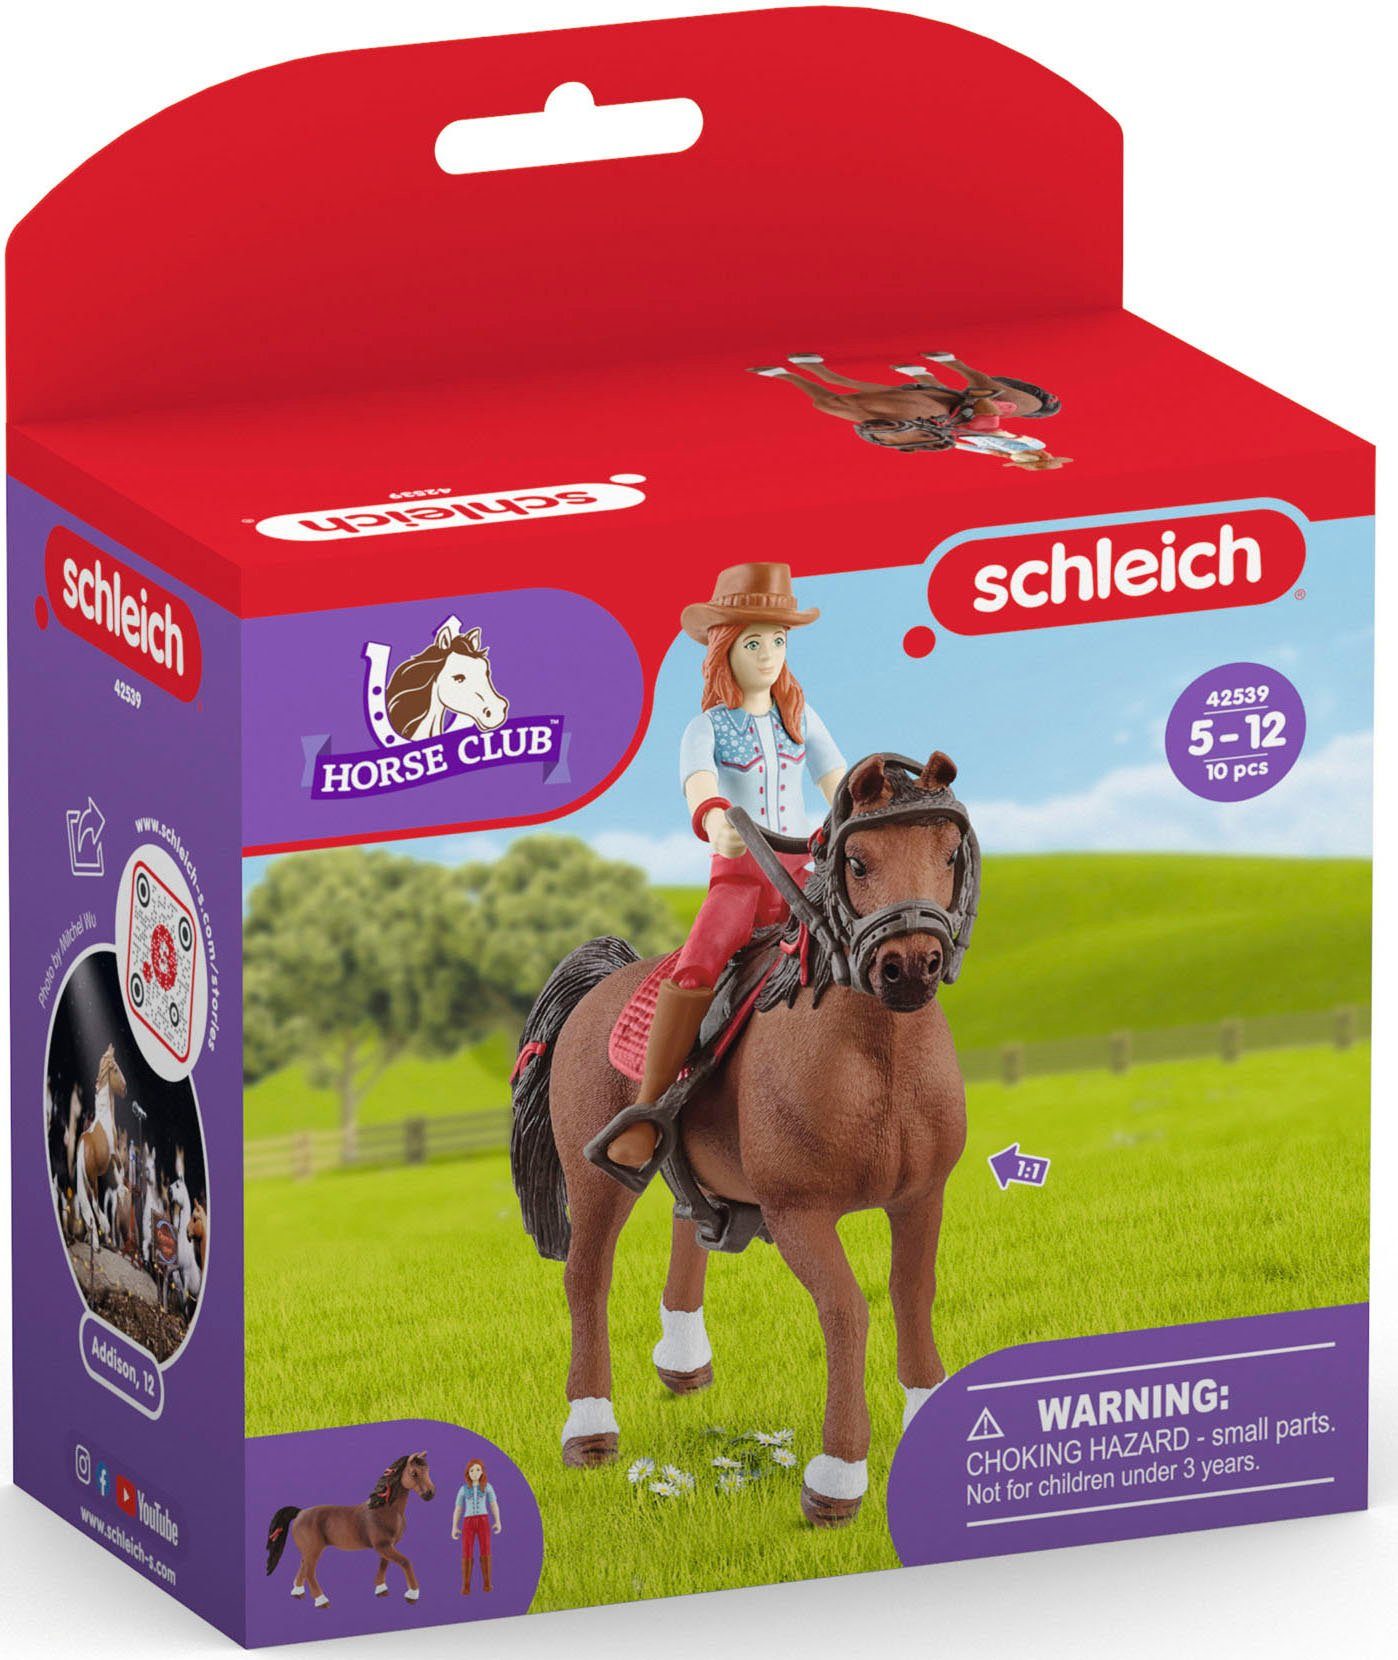 HORSE Spielfigur Schleich® Cayenne (42539) CLUB, Hannah und